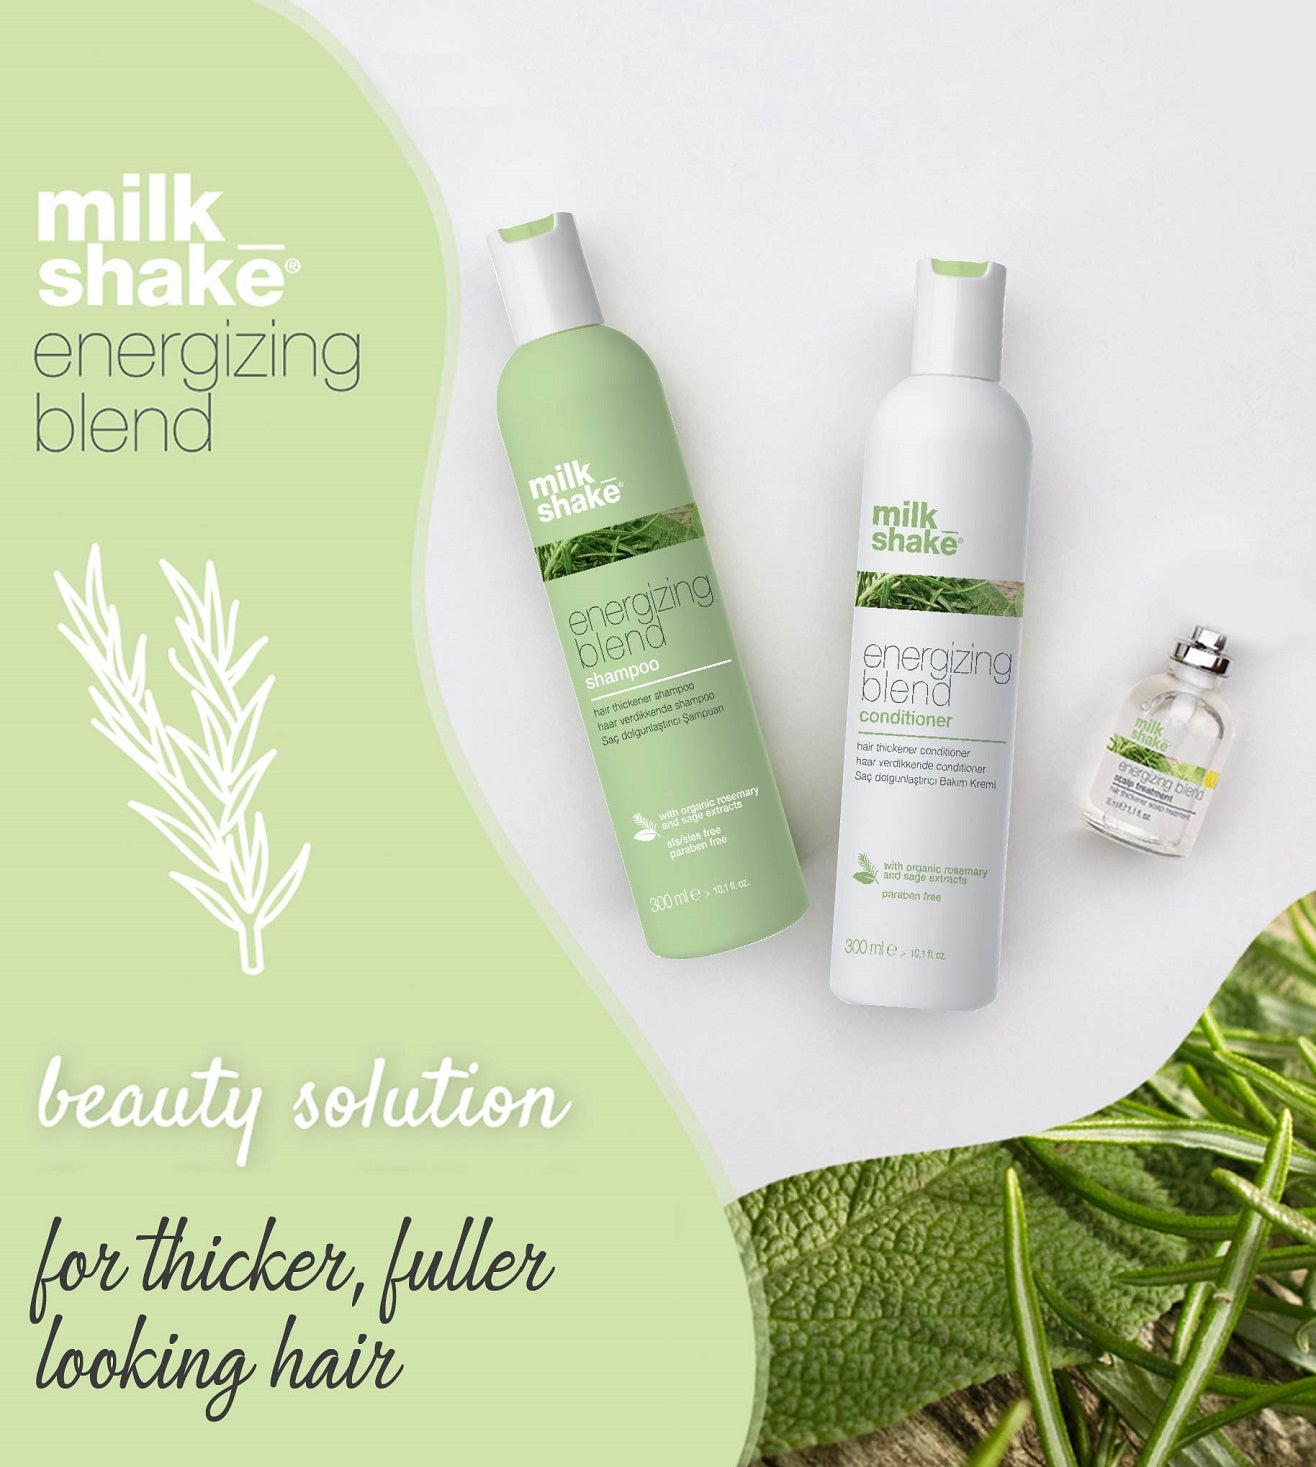 milk_shake energizing blend shampoo